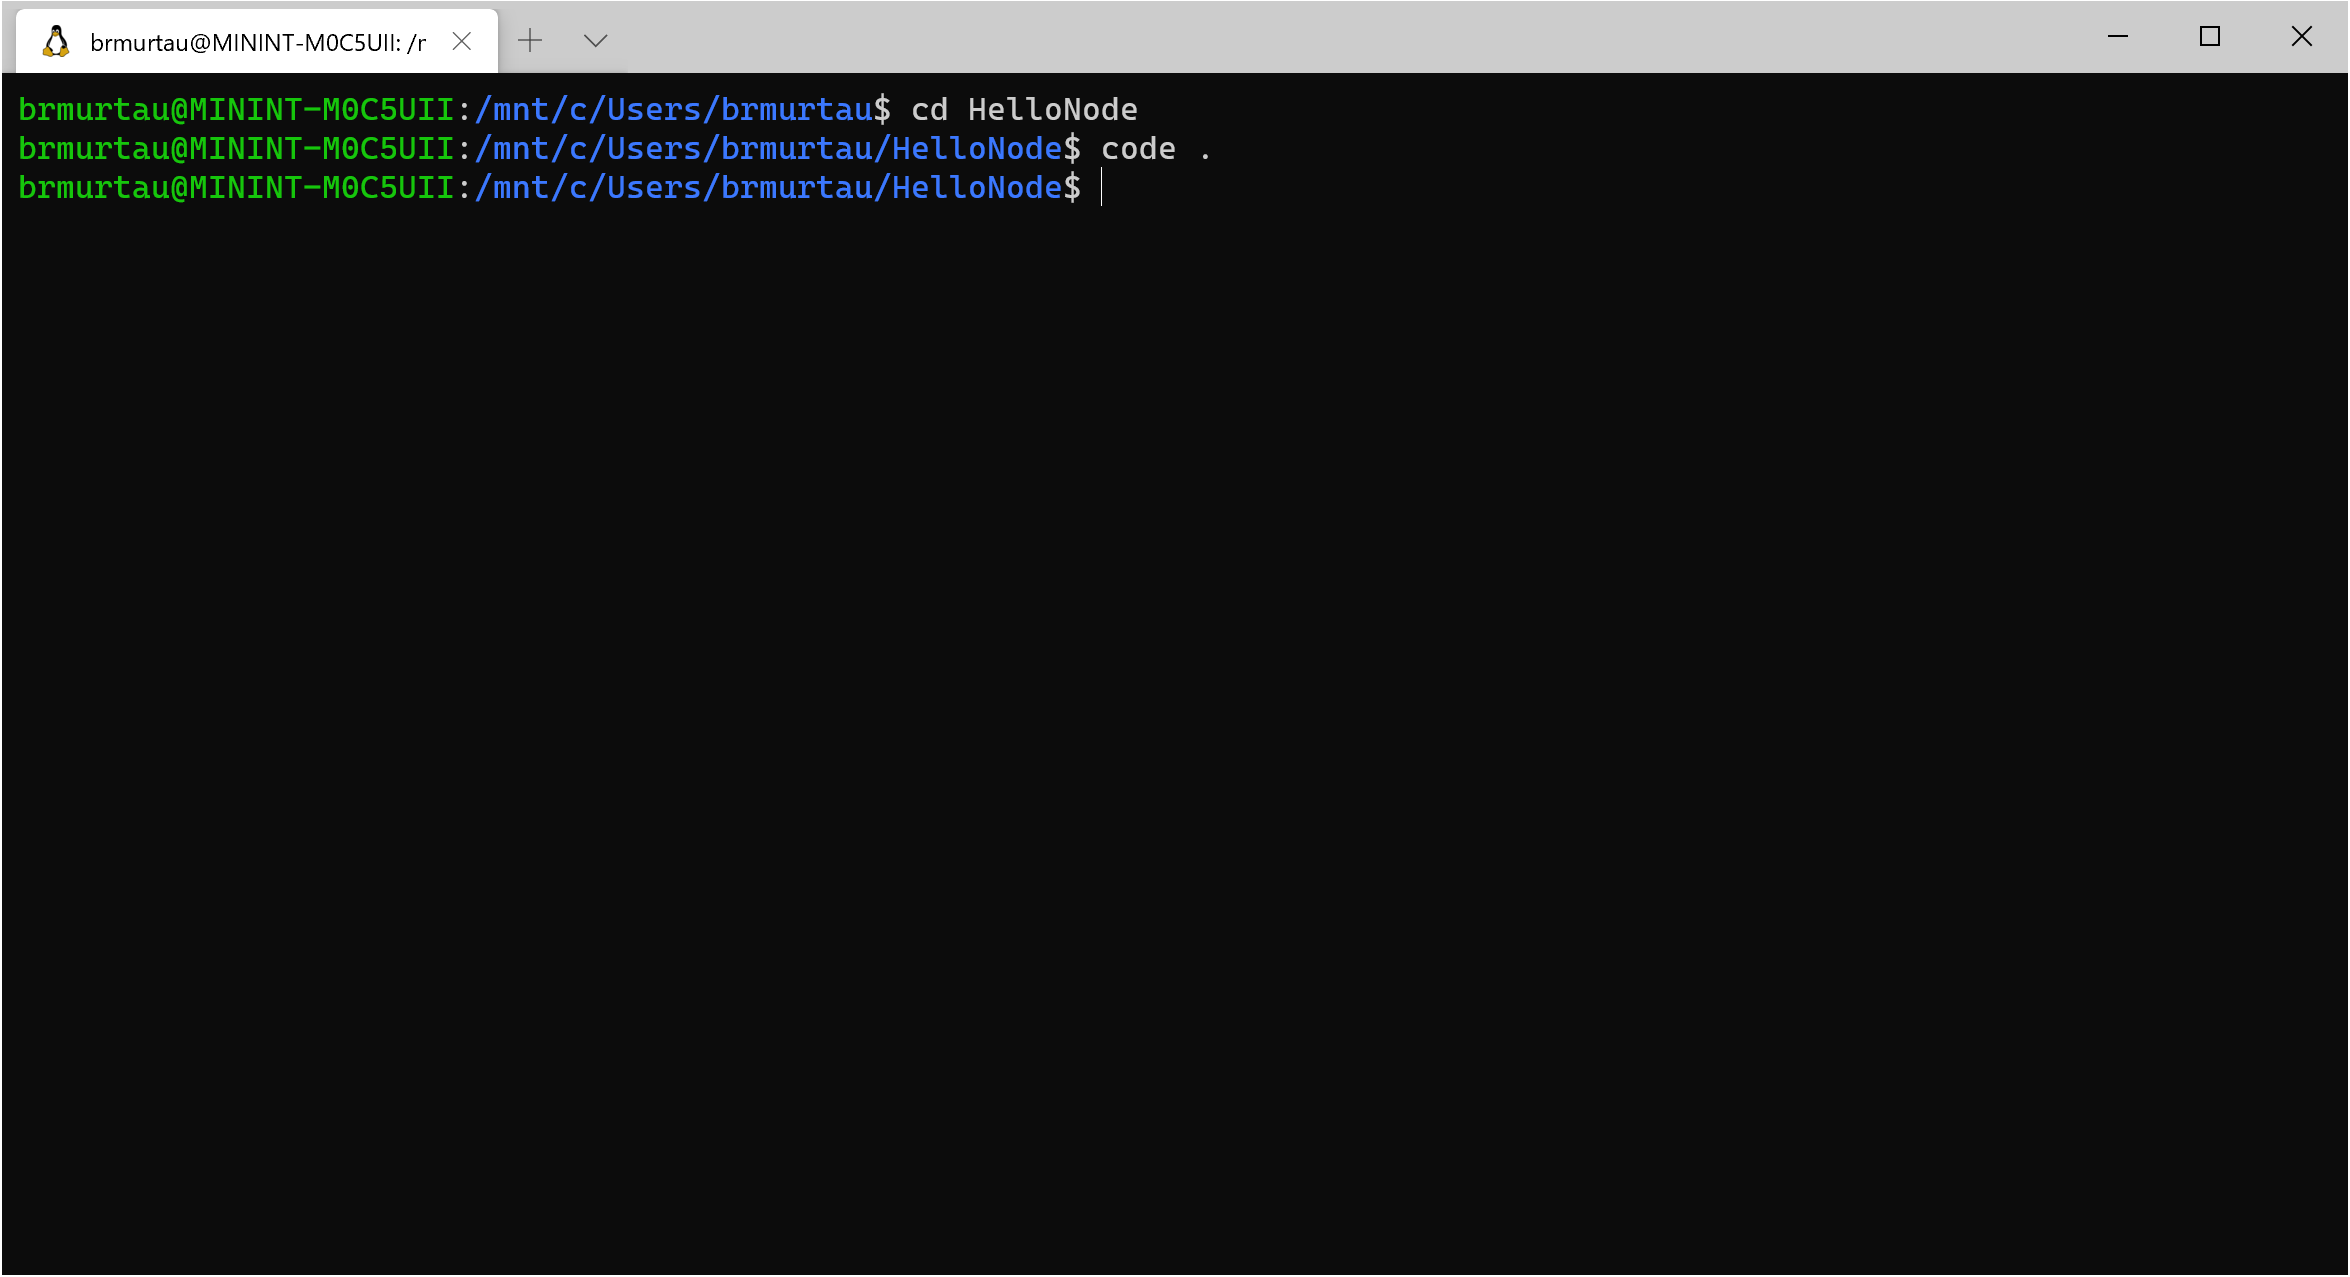 Launch code . from Ubuntu terminal